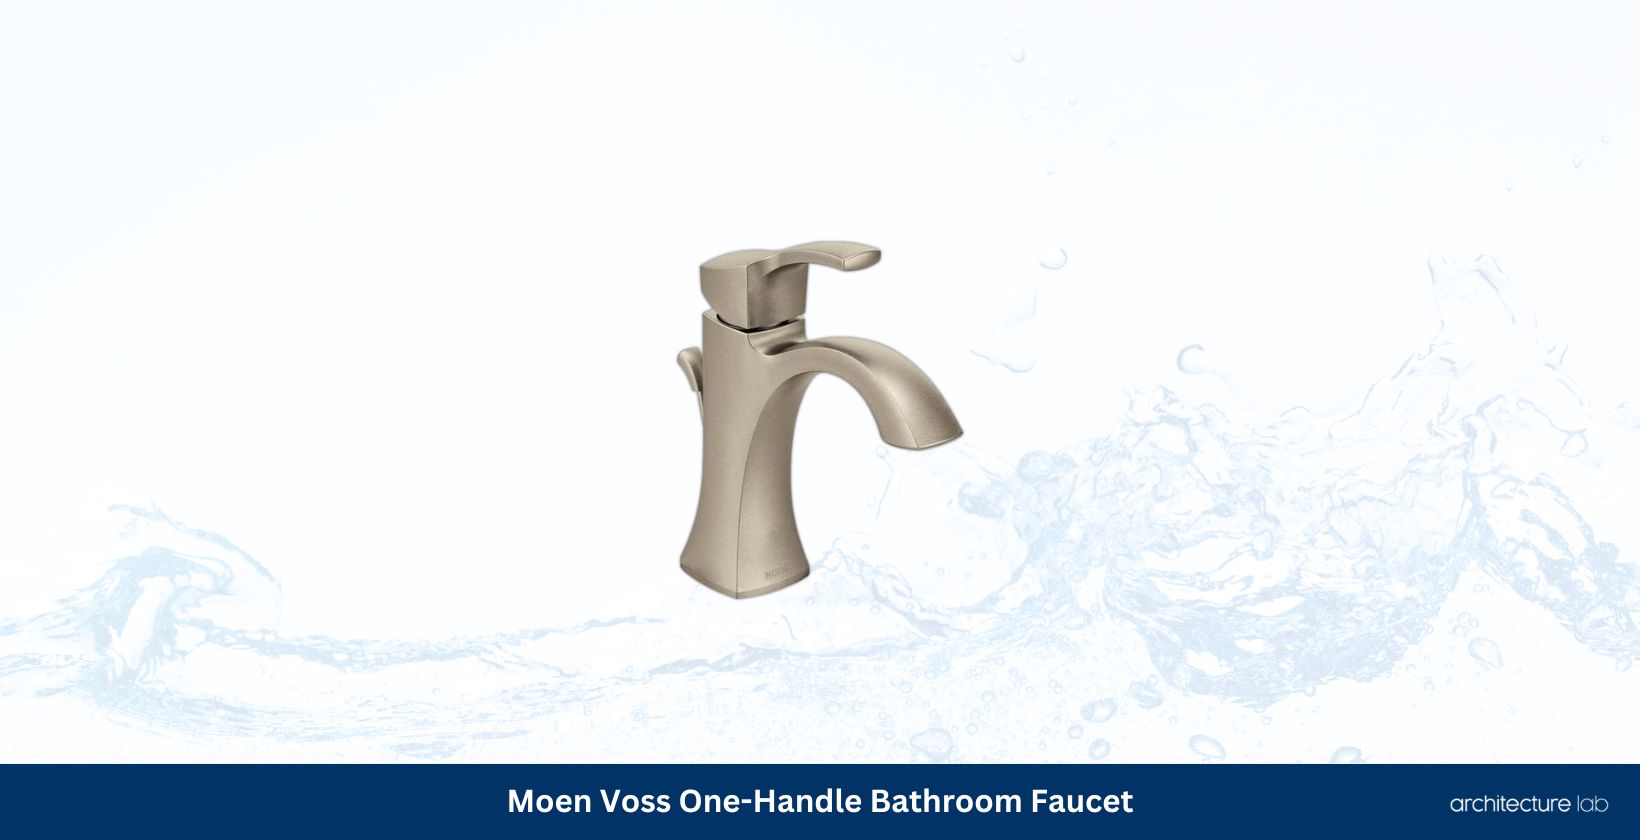 Moen voss one handle bathroom faucet 6903bn